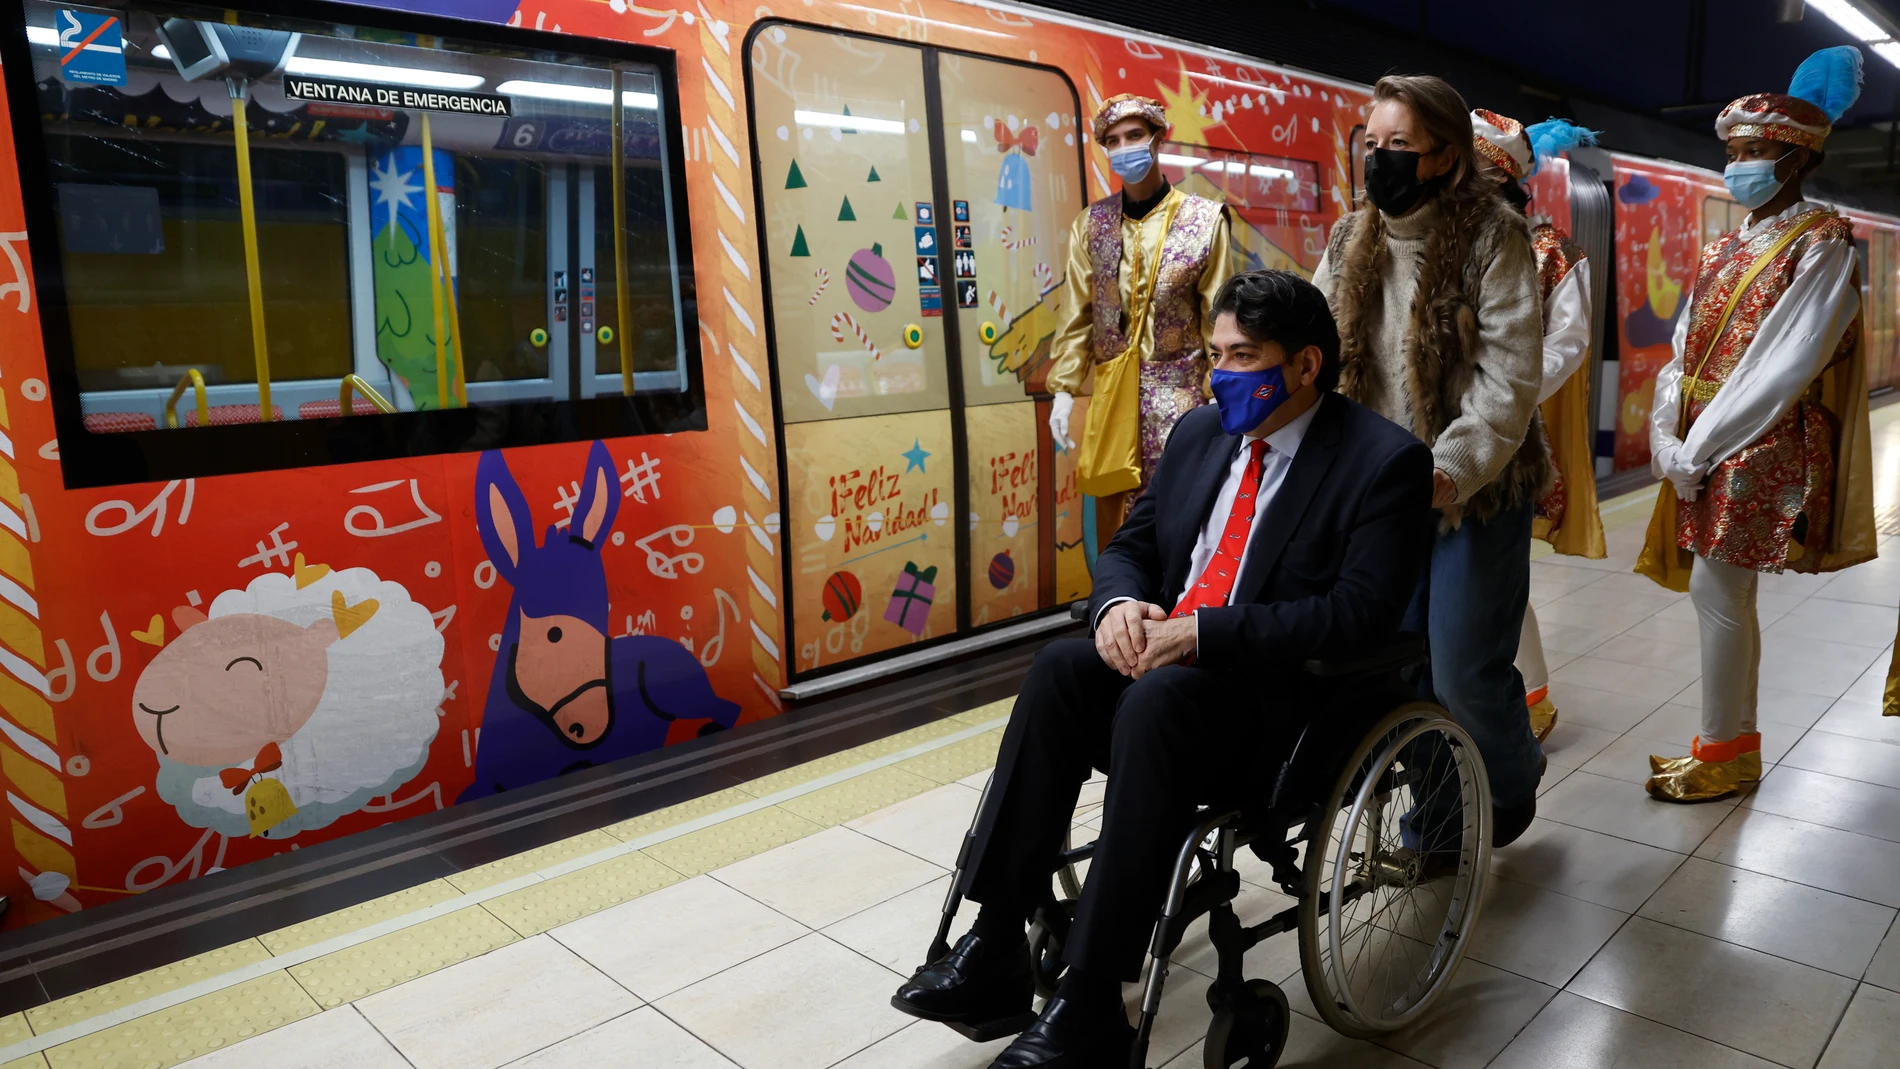 El consejero de Transportes e infraestructuras de la Comunidad de Madrid, David Pérez, durante la visita a los nuevos trenes acompañado de los pajes de la Navidad